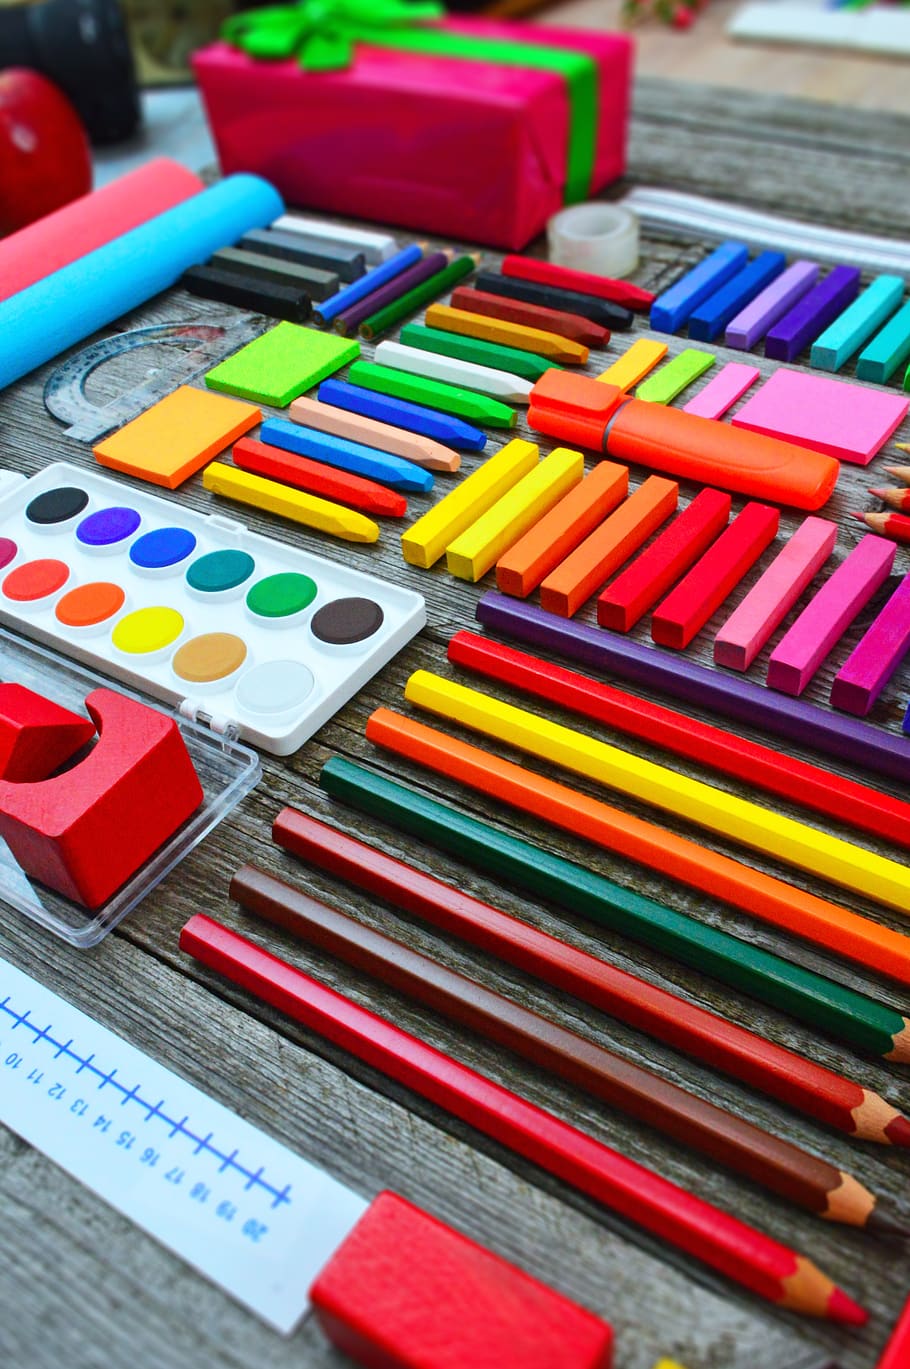 school times, school school supplies, brushes, crayon, education, school starts, school supplies, watercolor, school, ruler